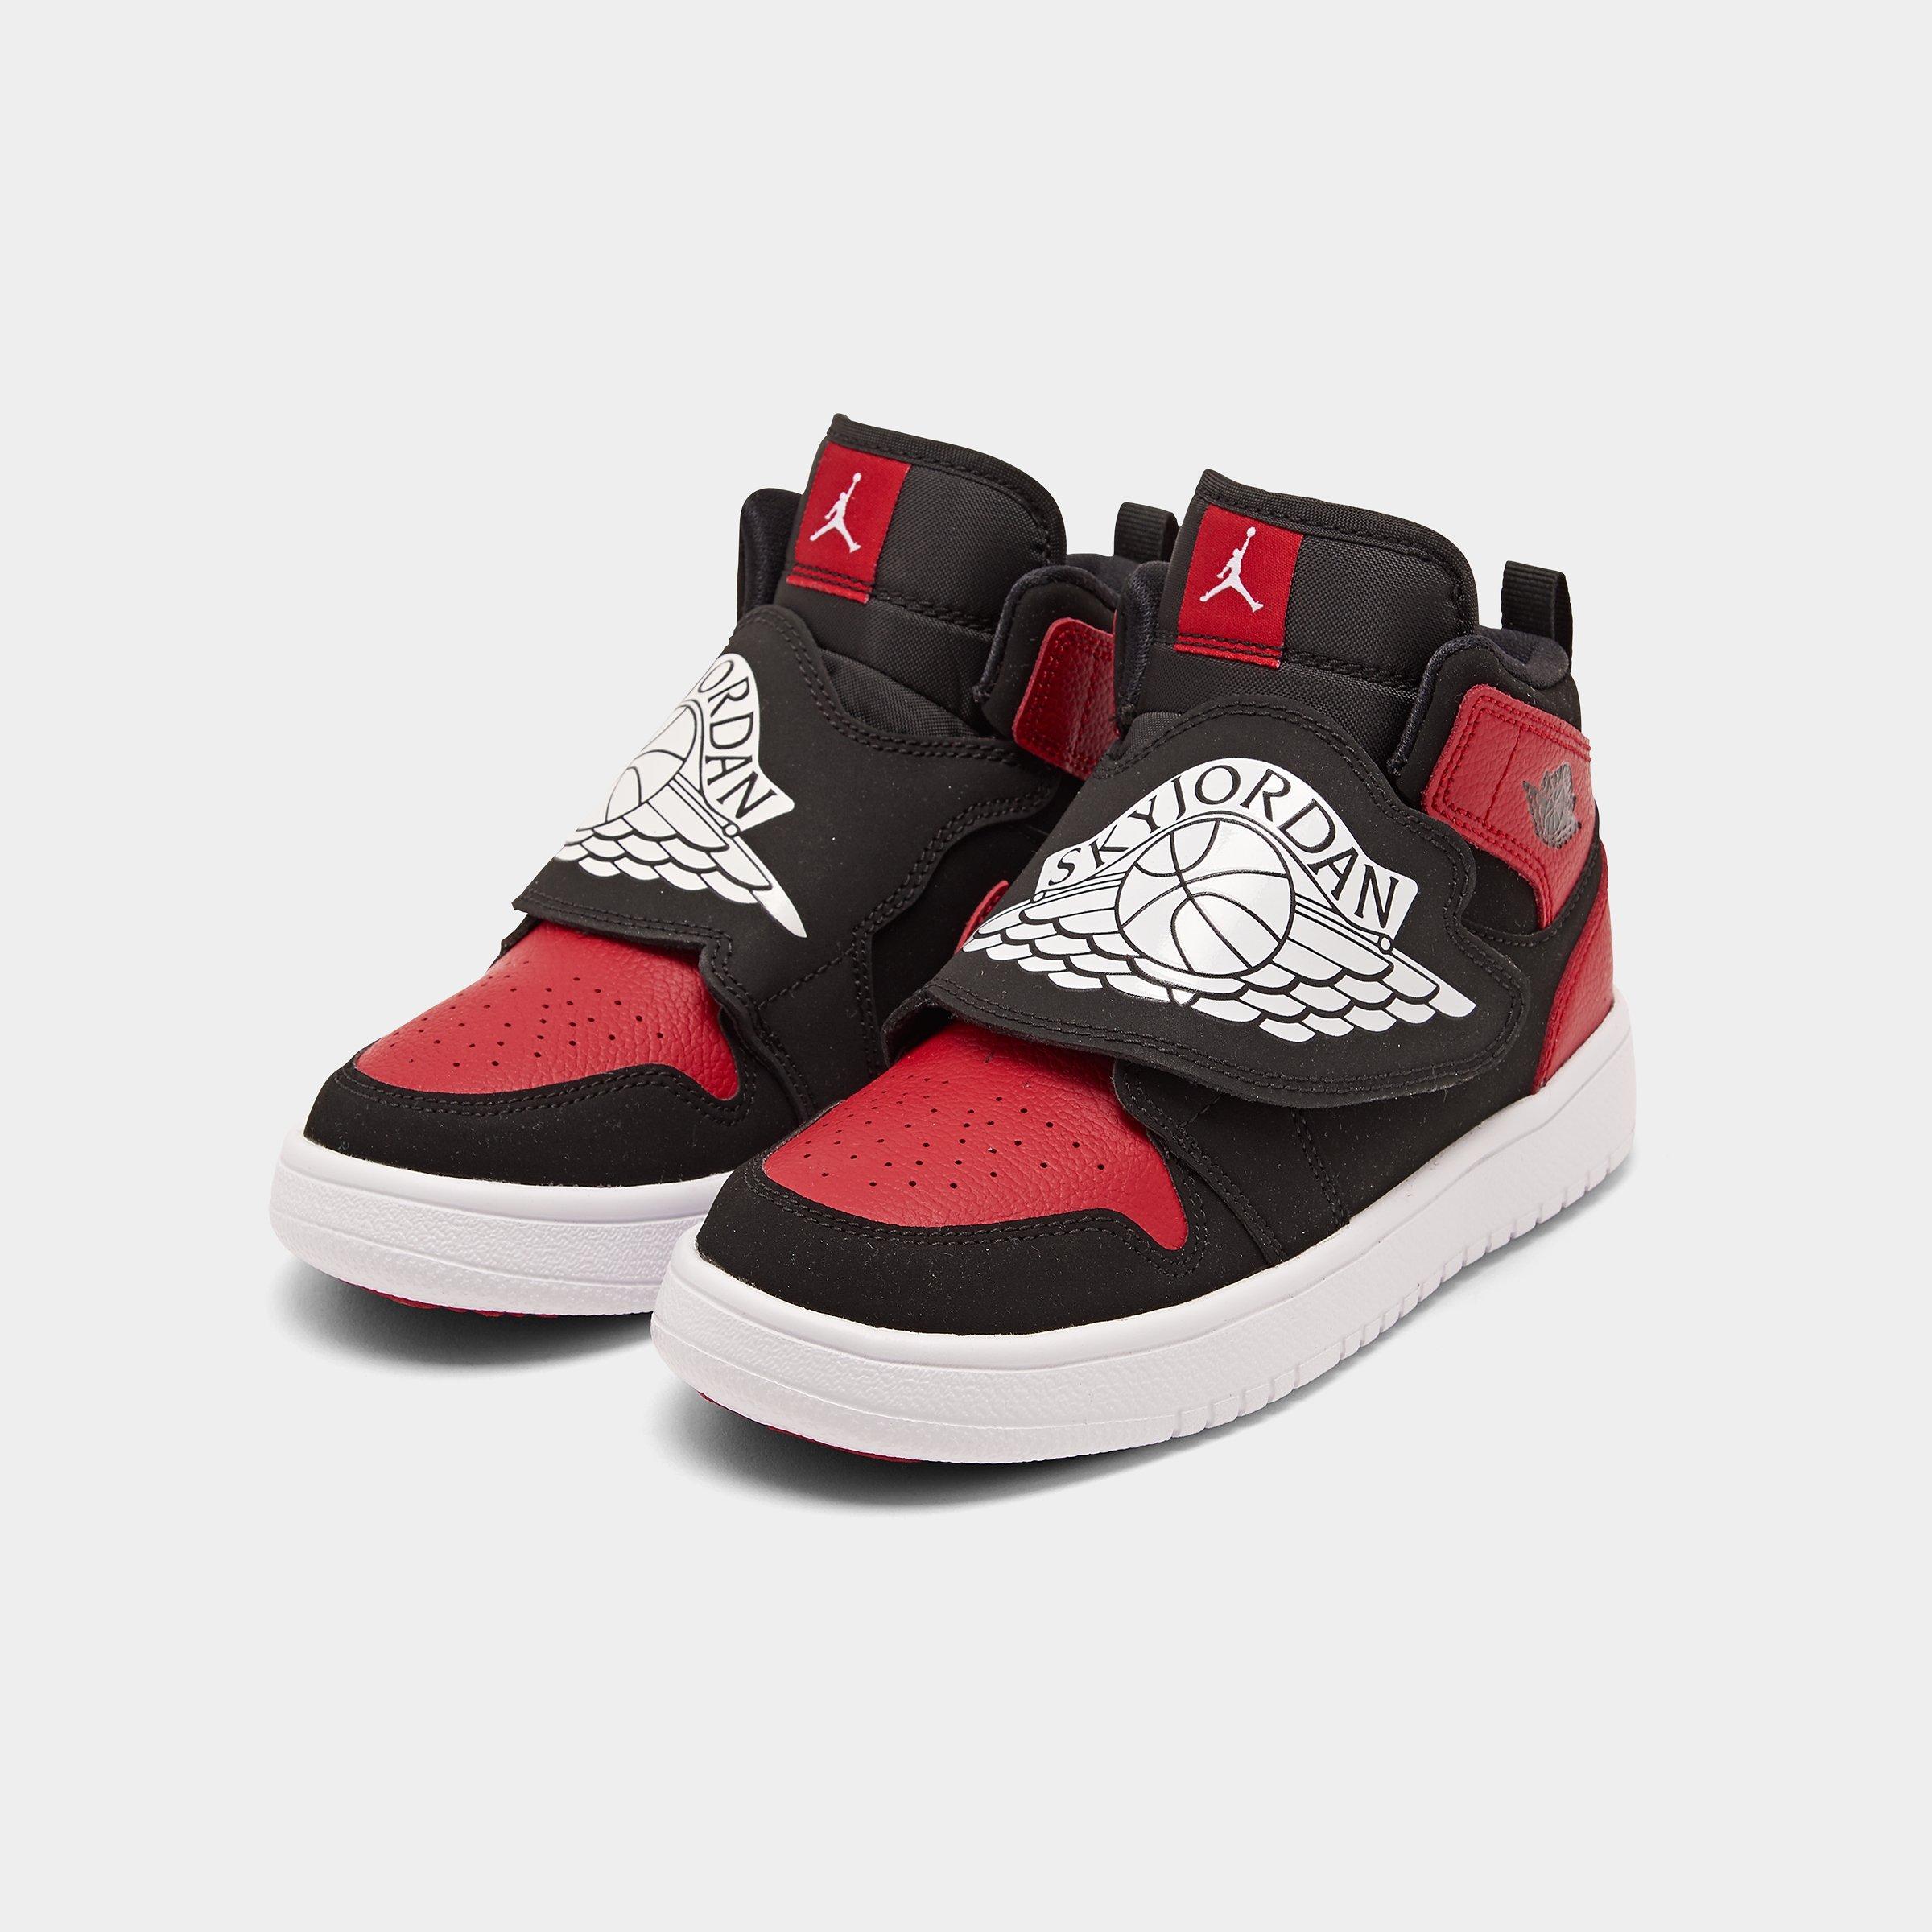 Little Kids Air Jordans Deals, 51% OFF | lagence.tv